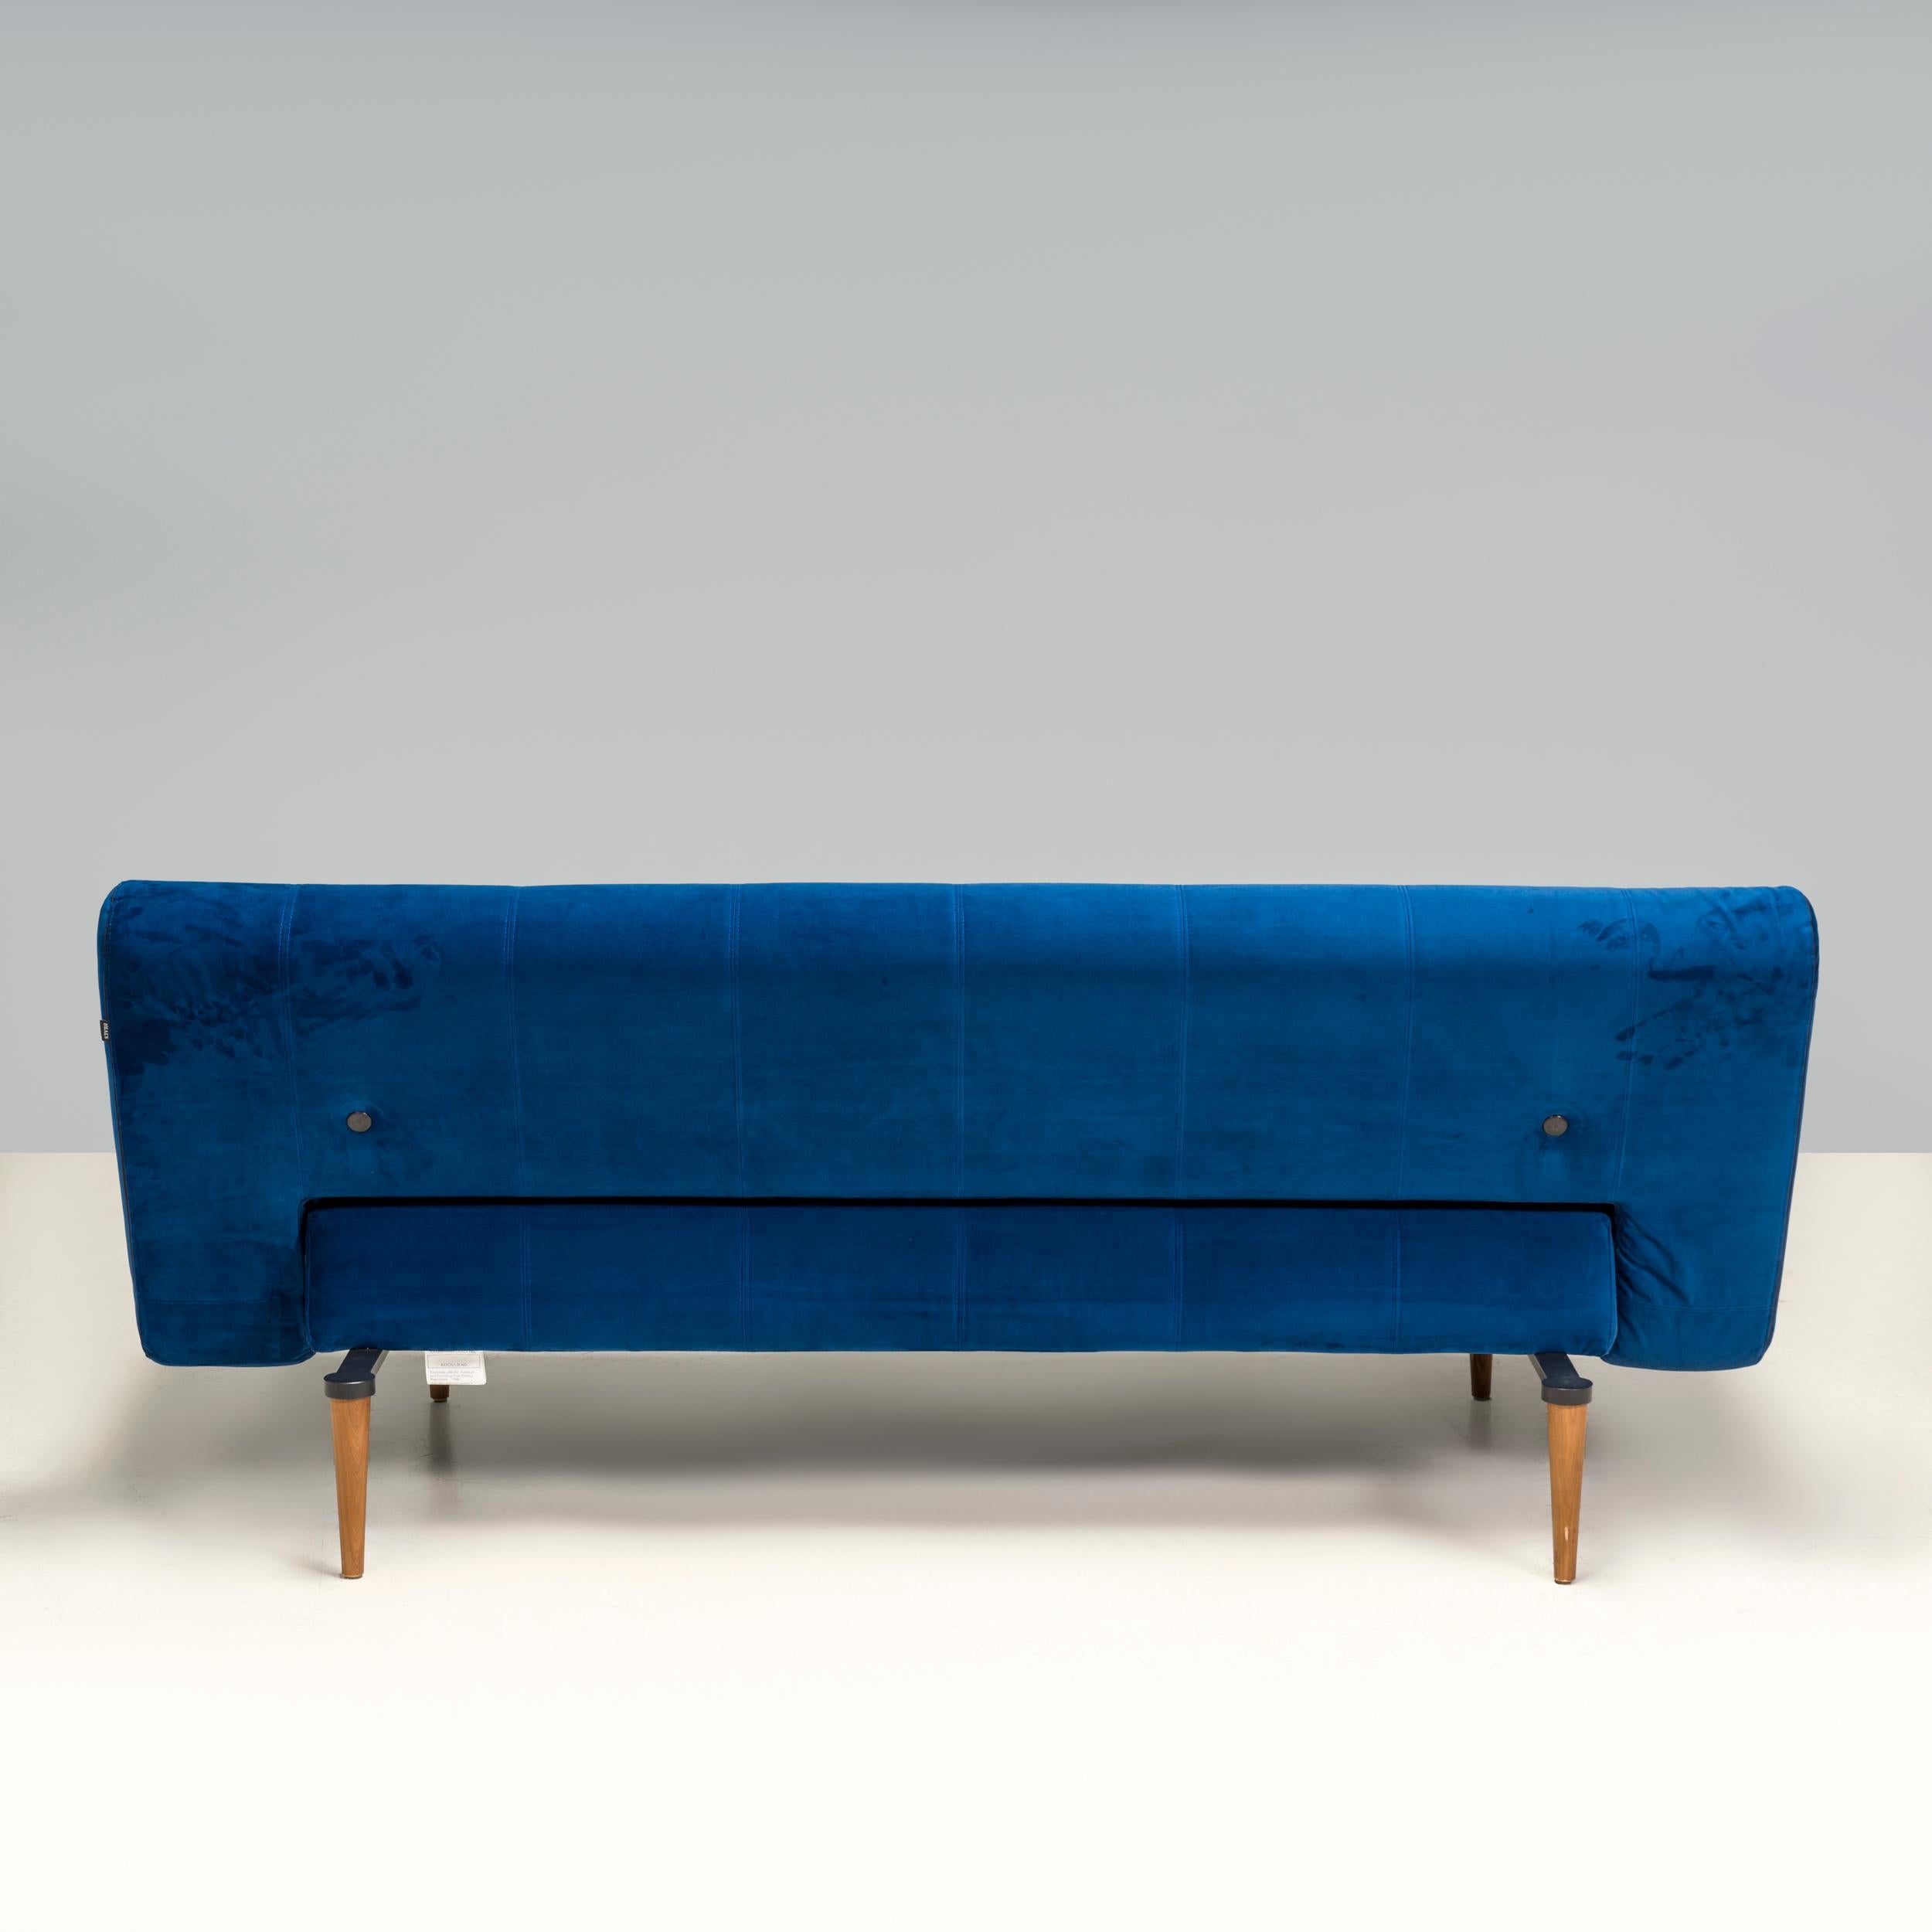 European Heal’s Hinge Blue Velvet Sofa Bed